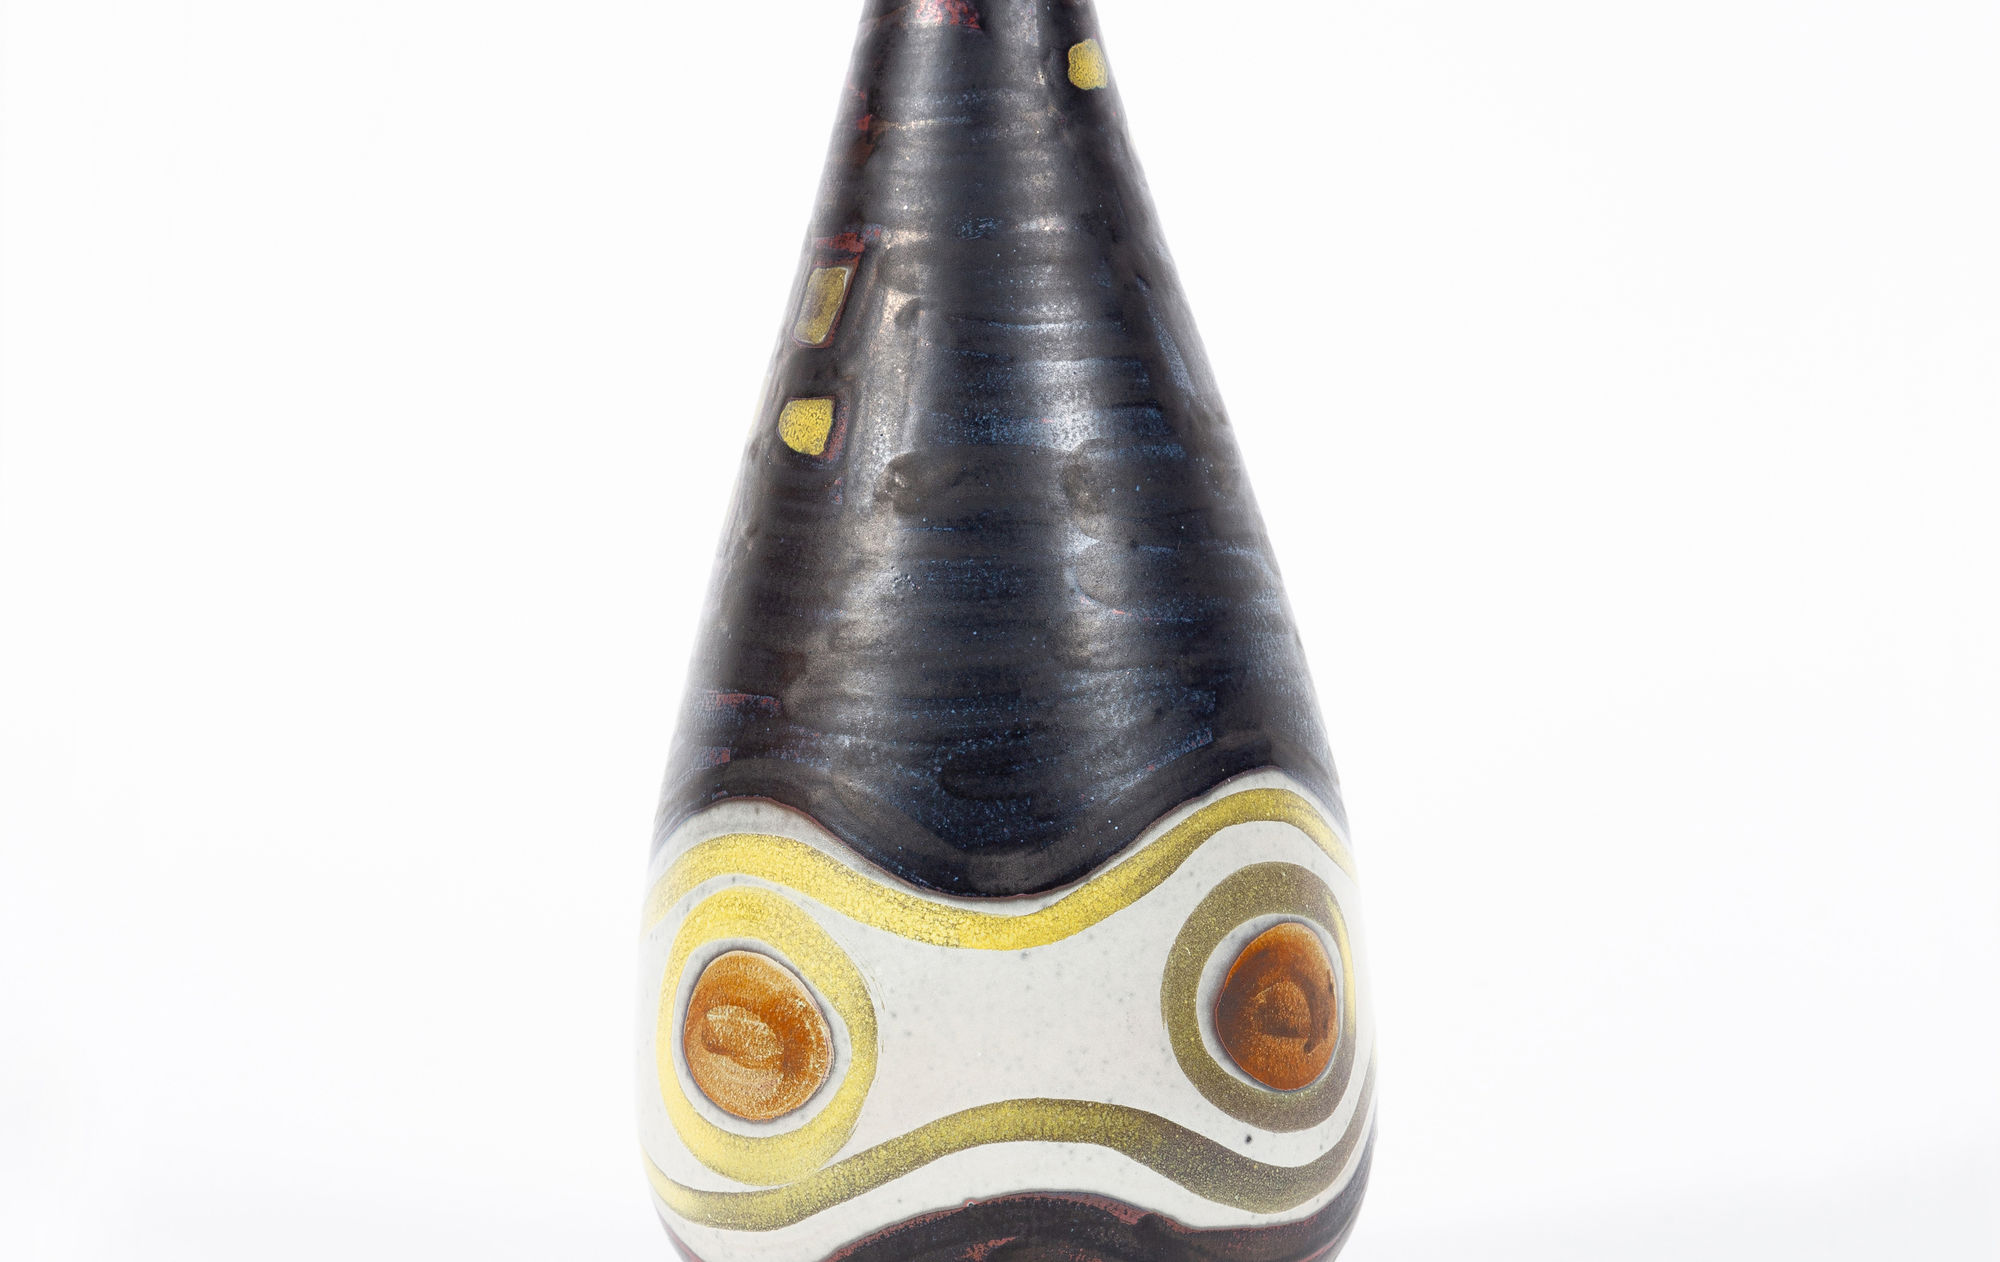 Arnold Zahner ceramic vase